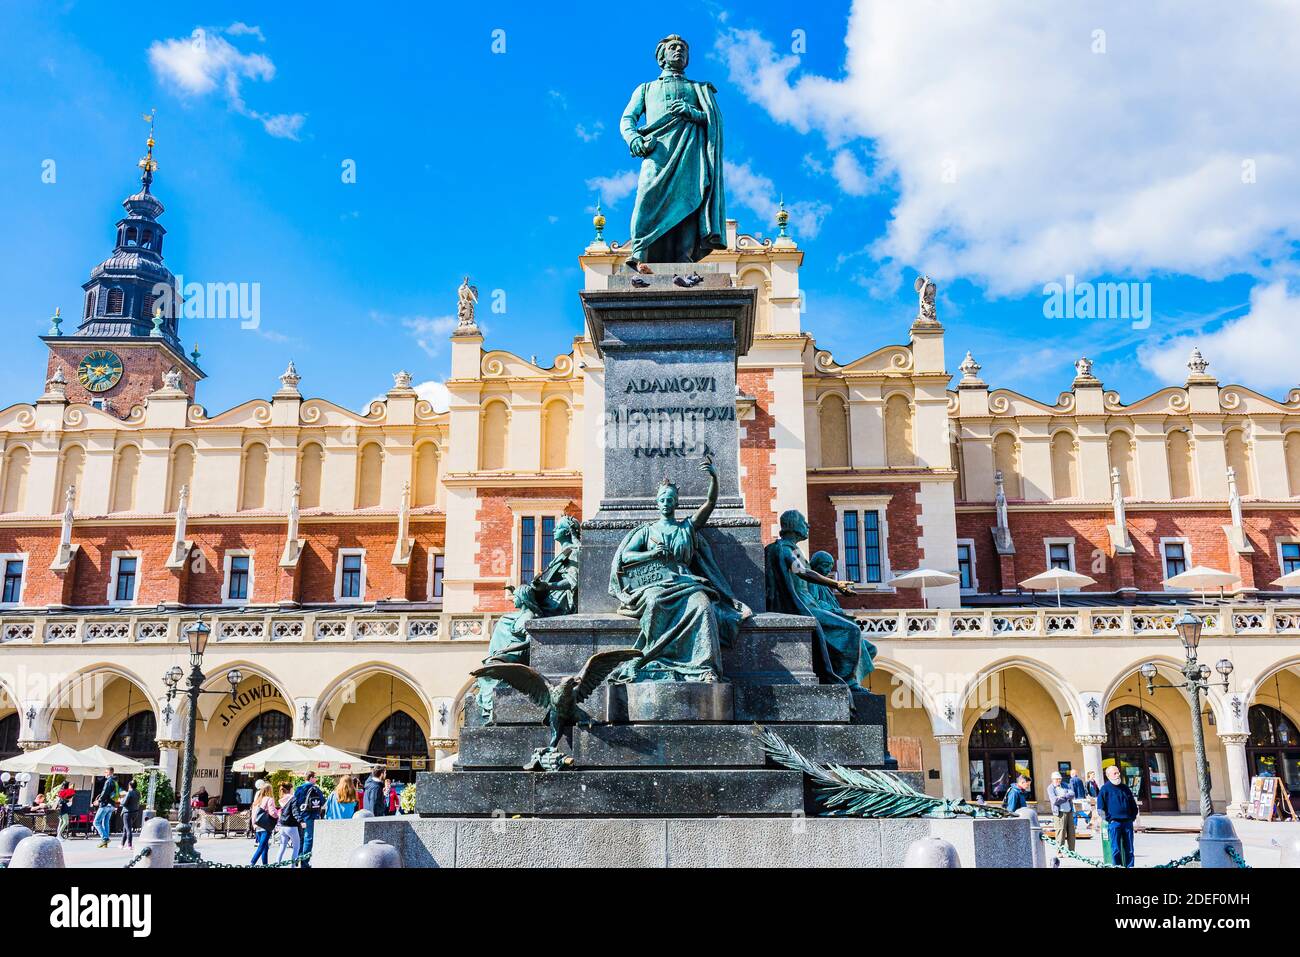 Le monument Adam Mickiewicz de Cracovie est l'un des monuments de bronze les plus connus de Pologne, et un lieu de rencontre préféré sur la place du marché principal dans le Banque D'Images